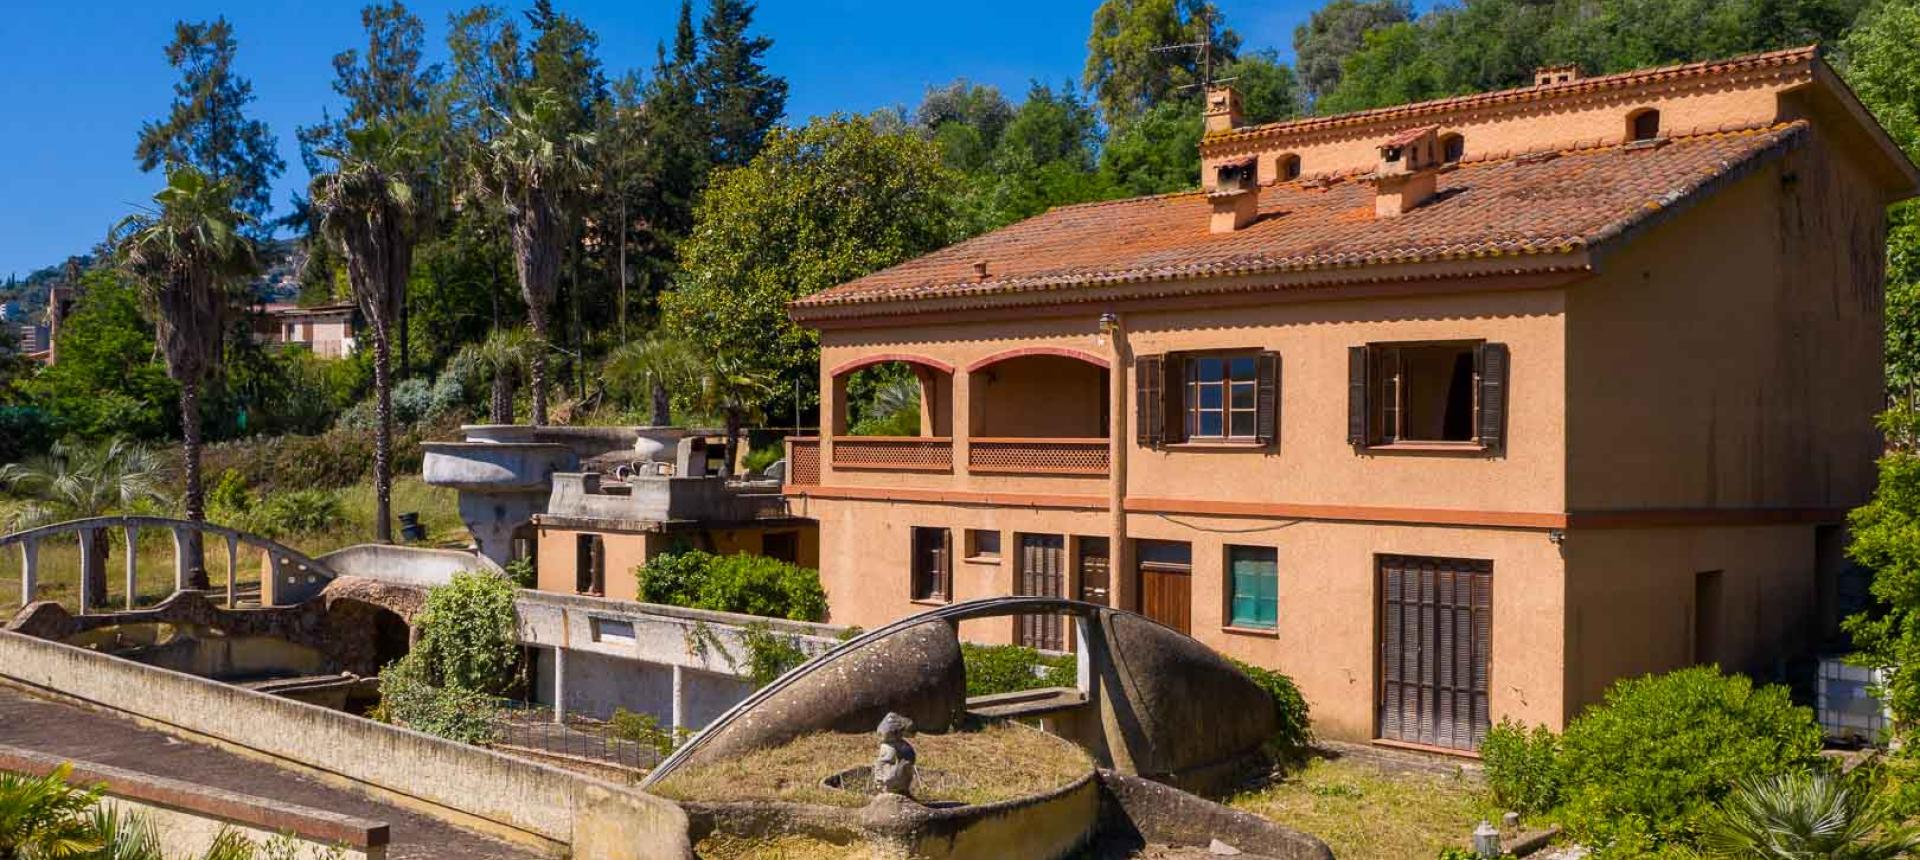 Ajaccio - Milelli - Propriété de 5000 m² avec maison - Jardin aménagé - Garages - vue dégagée.